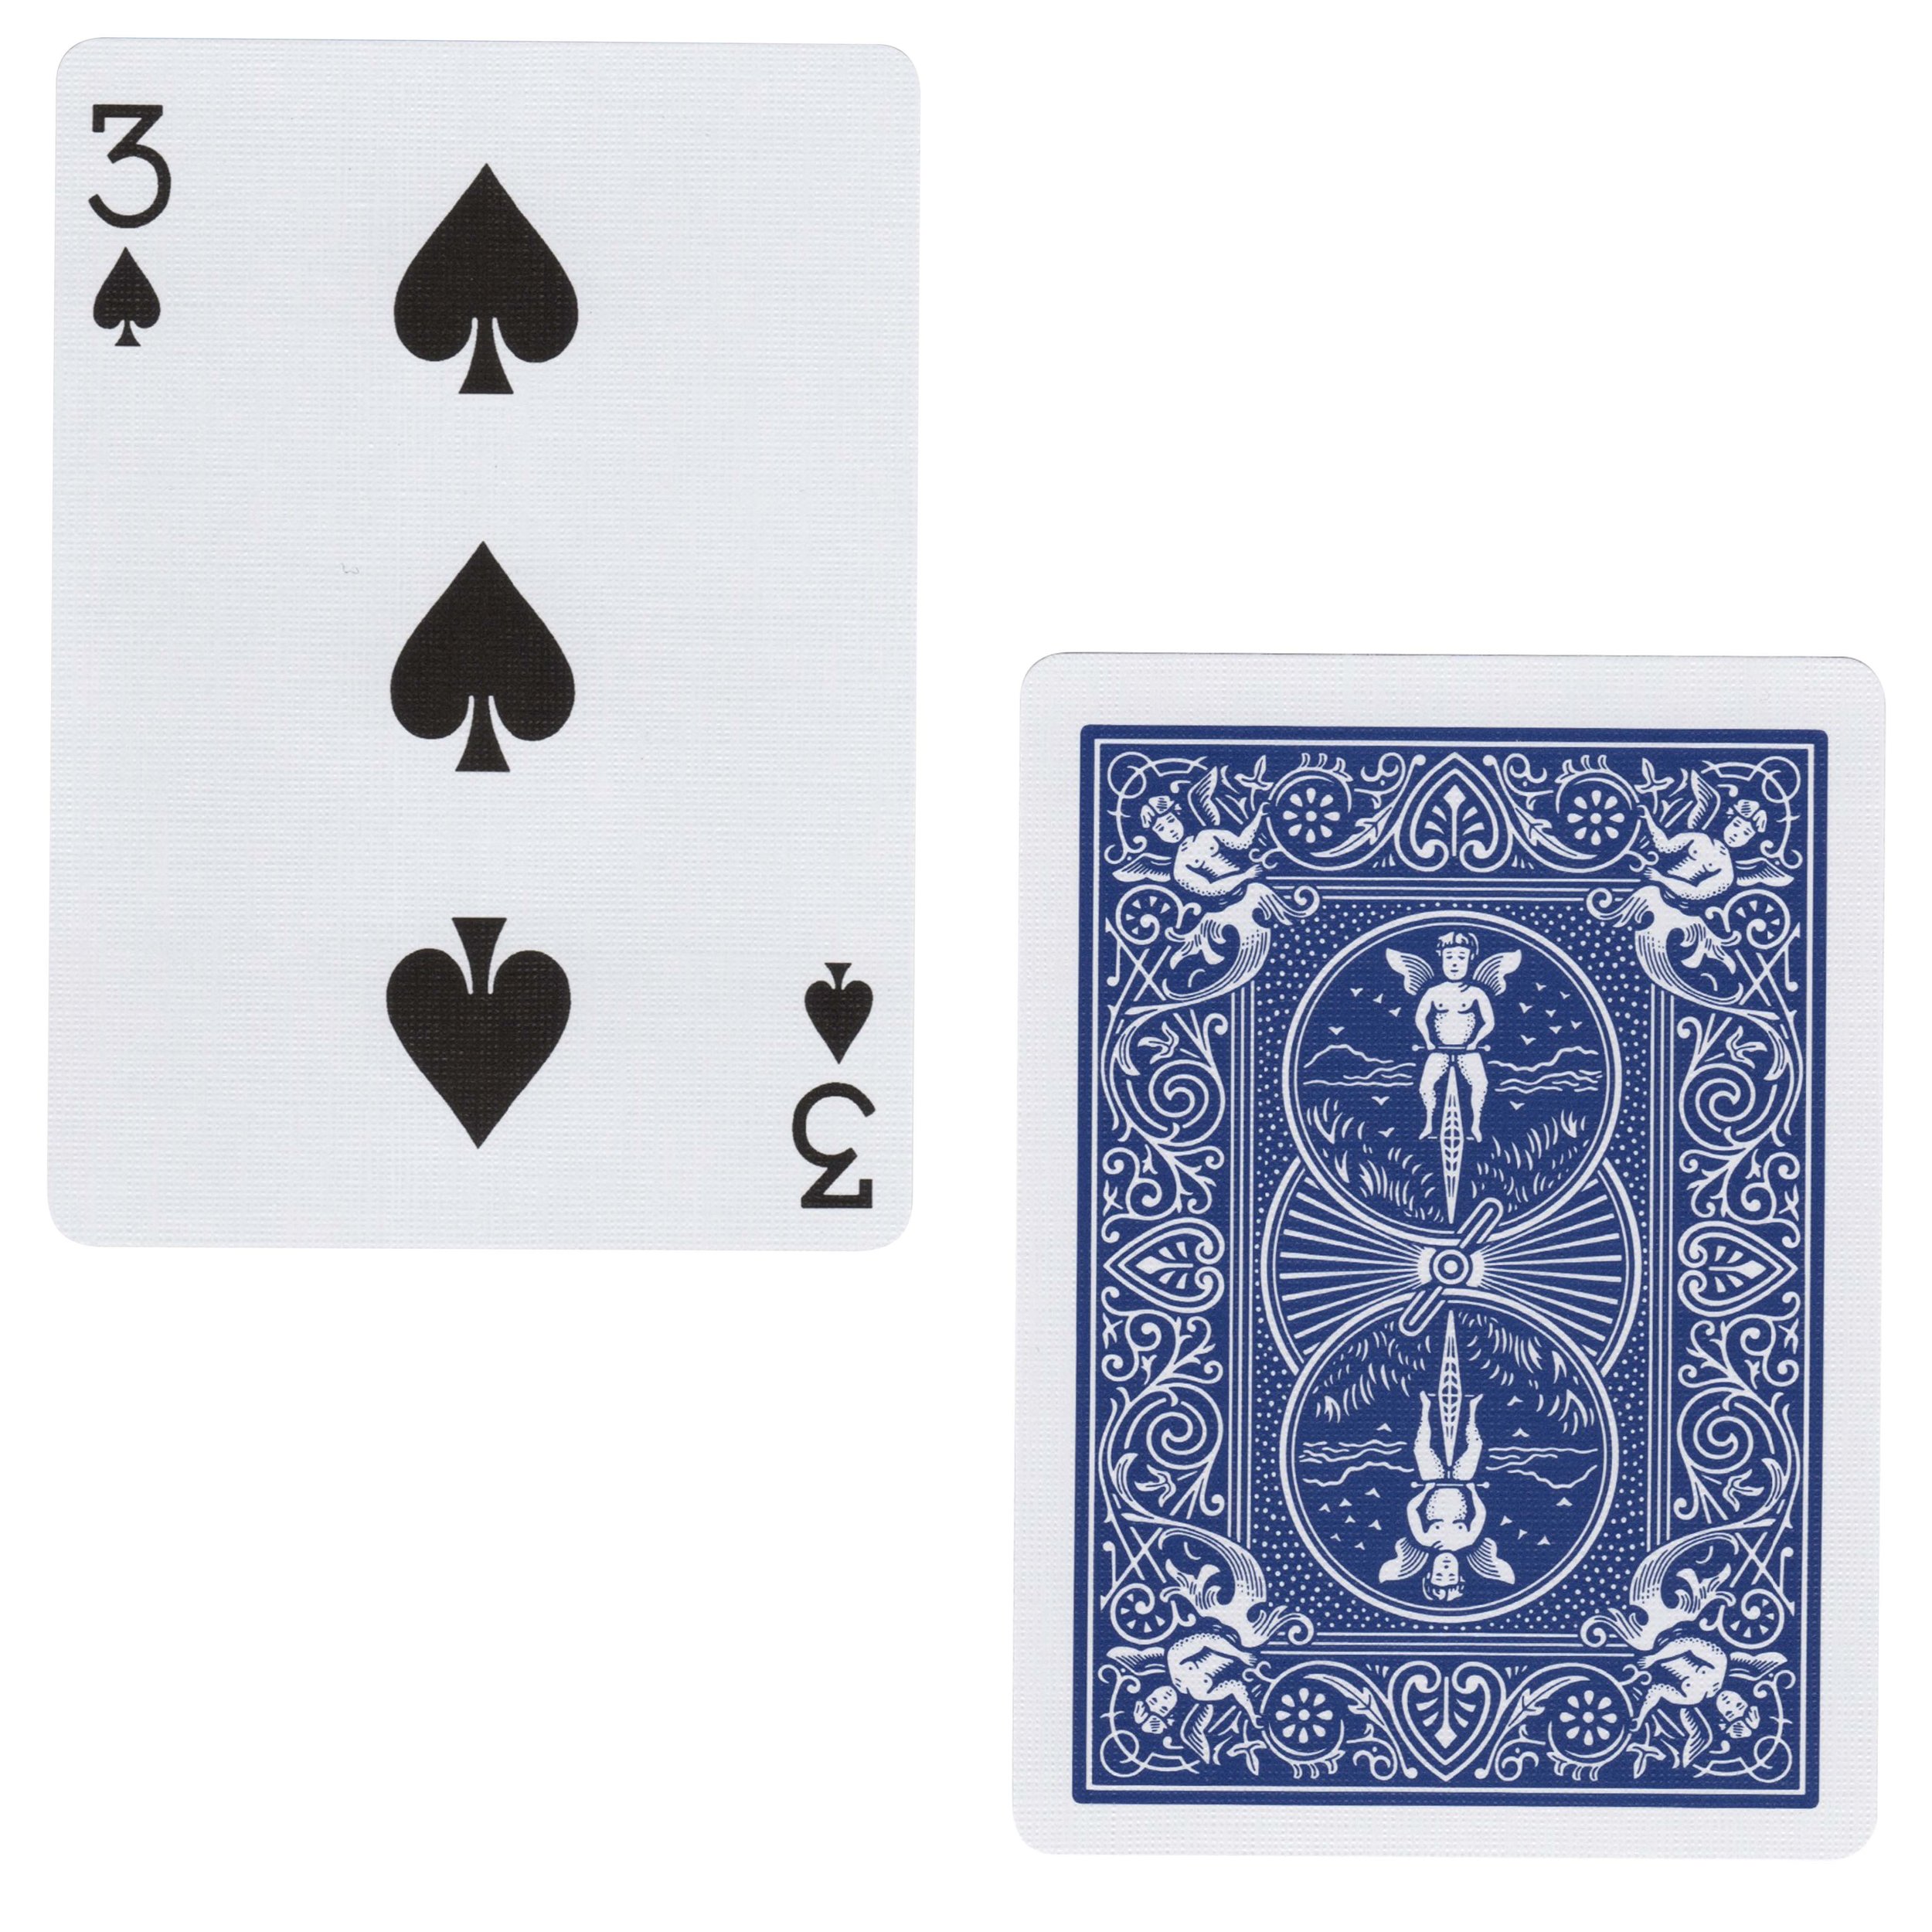 3 Spades Card Texture.jpg